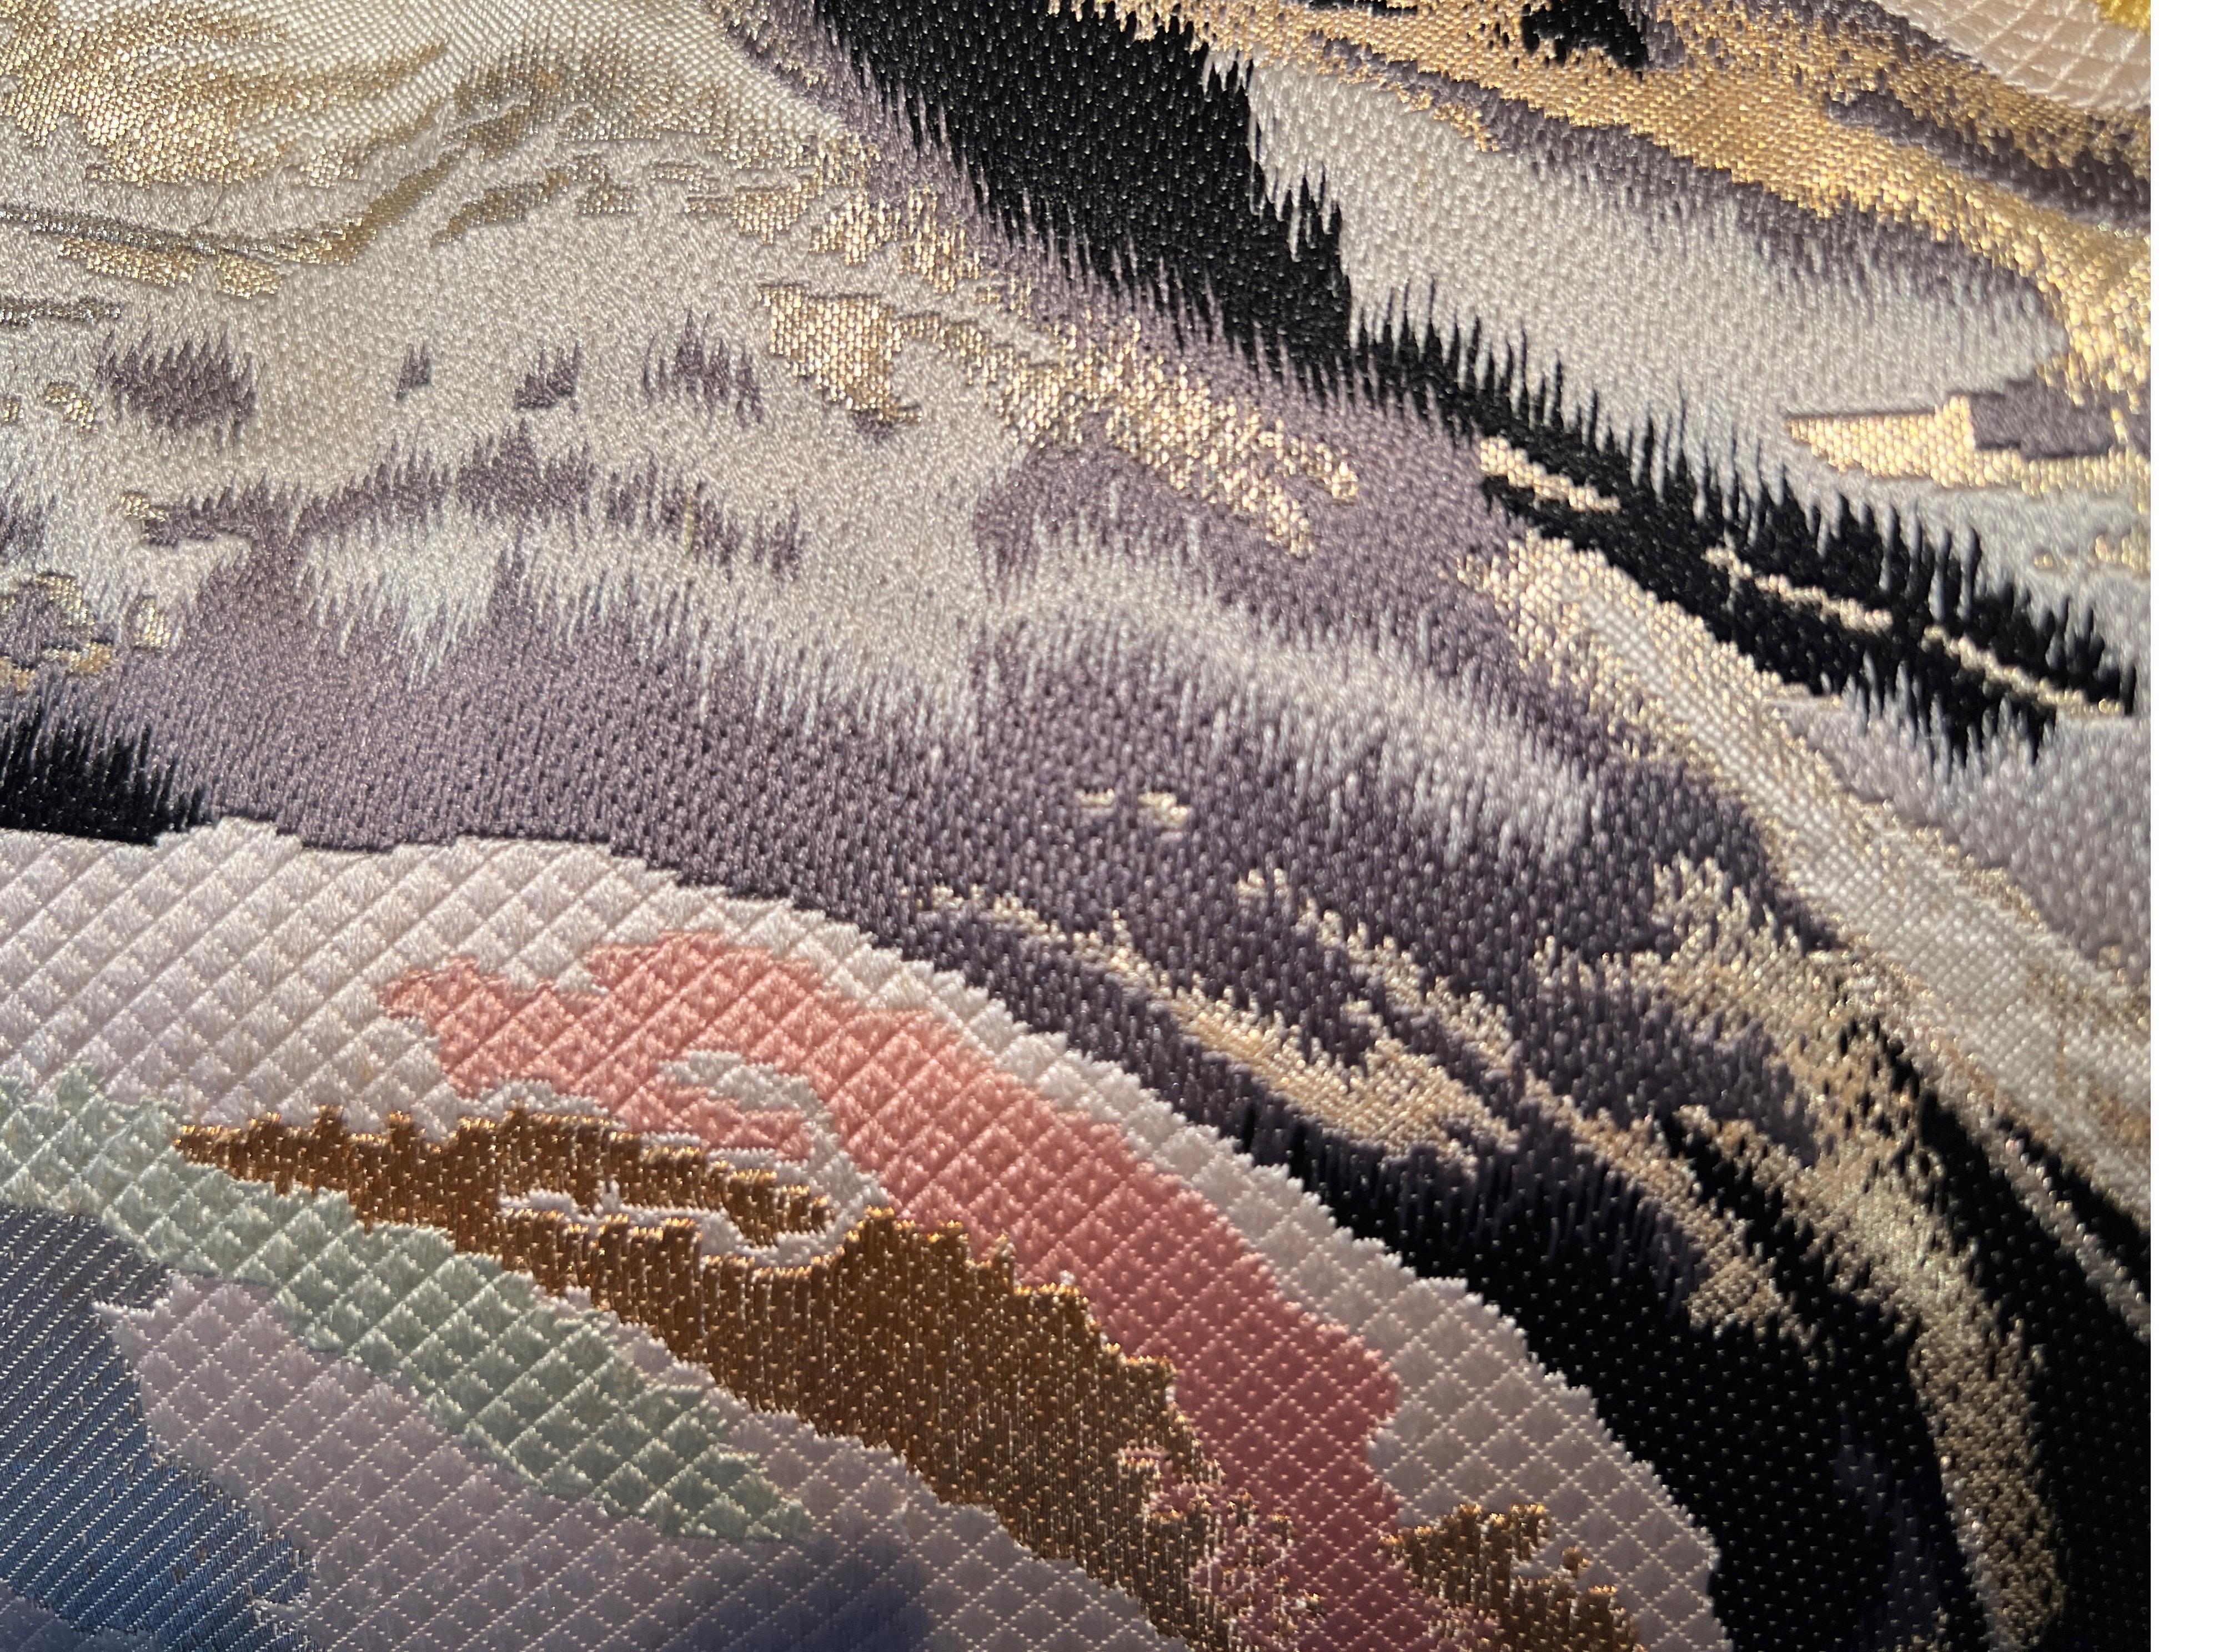 Ein spektakuläres lombardisches Kissen, gewebt aus Seide und Metallfäden.

Die handgefertigten Kissen von Sinapango Interiors Paris, die aus alter Obi-Seide aus dem Nishijin-Distrikt in Kyoto Japan hergestellt werden, verleihen Ihrer Einrichtung